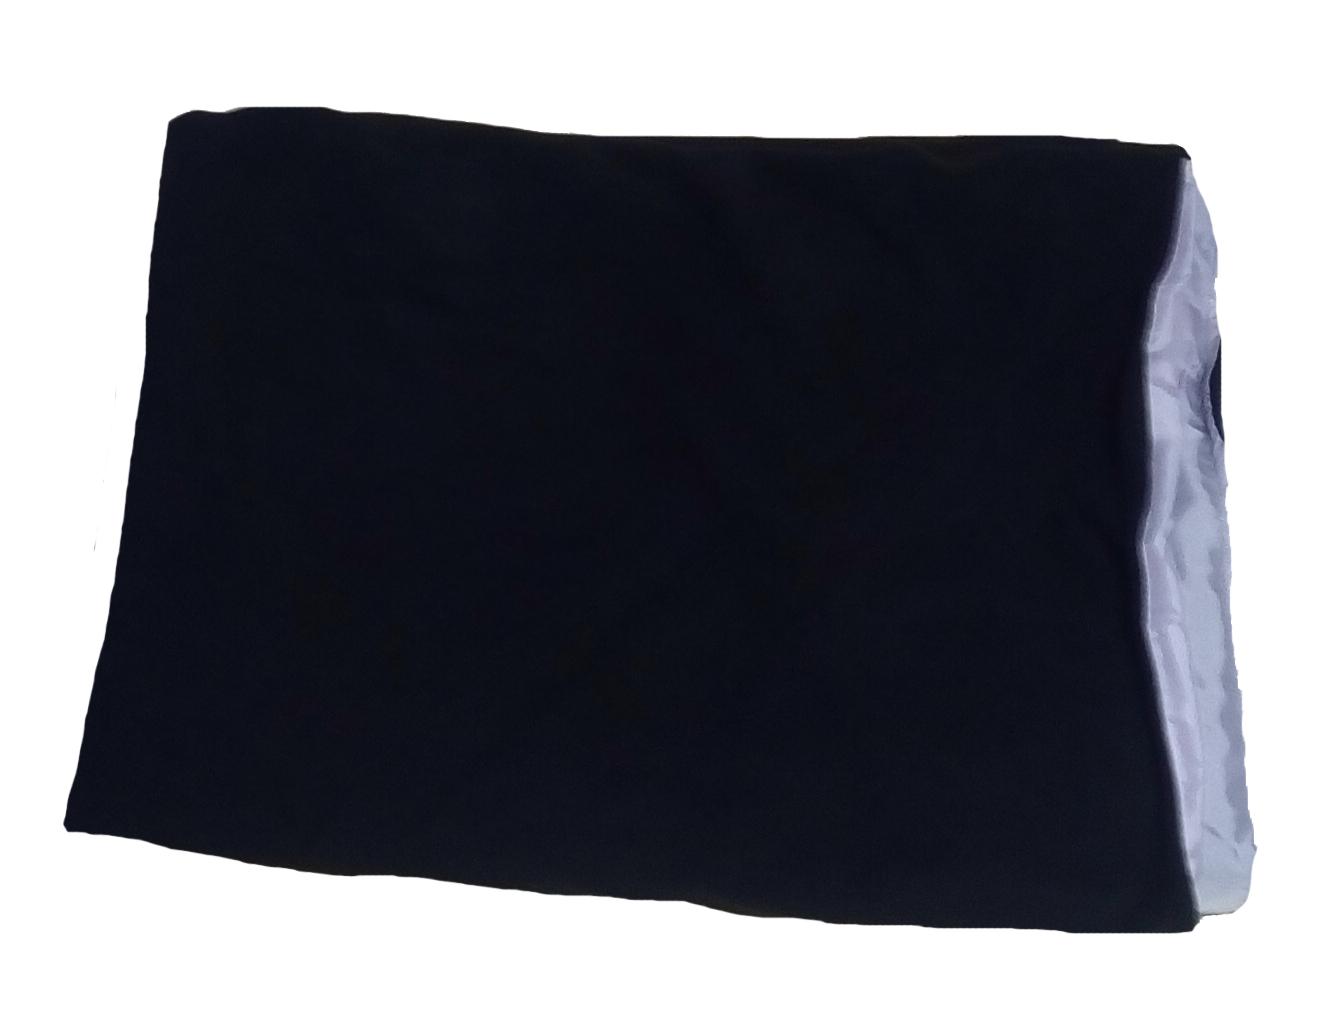 ผ้าห่ม ผ้าสองด้าน โพล่าฟลีซและไนลอน ขนาด 1.8x1.5เมตร